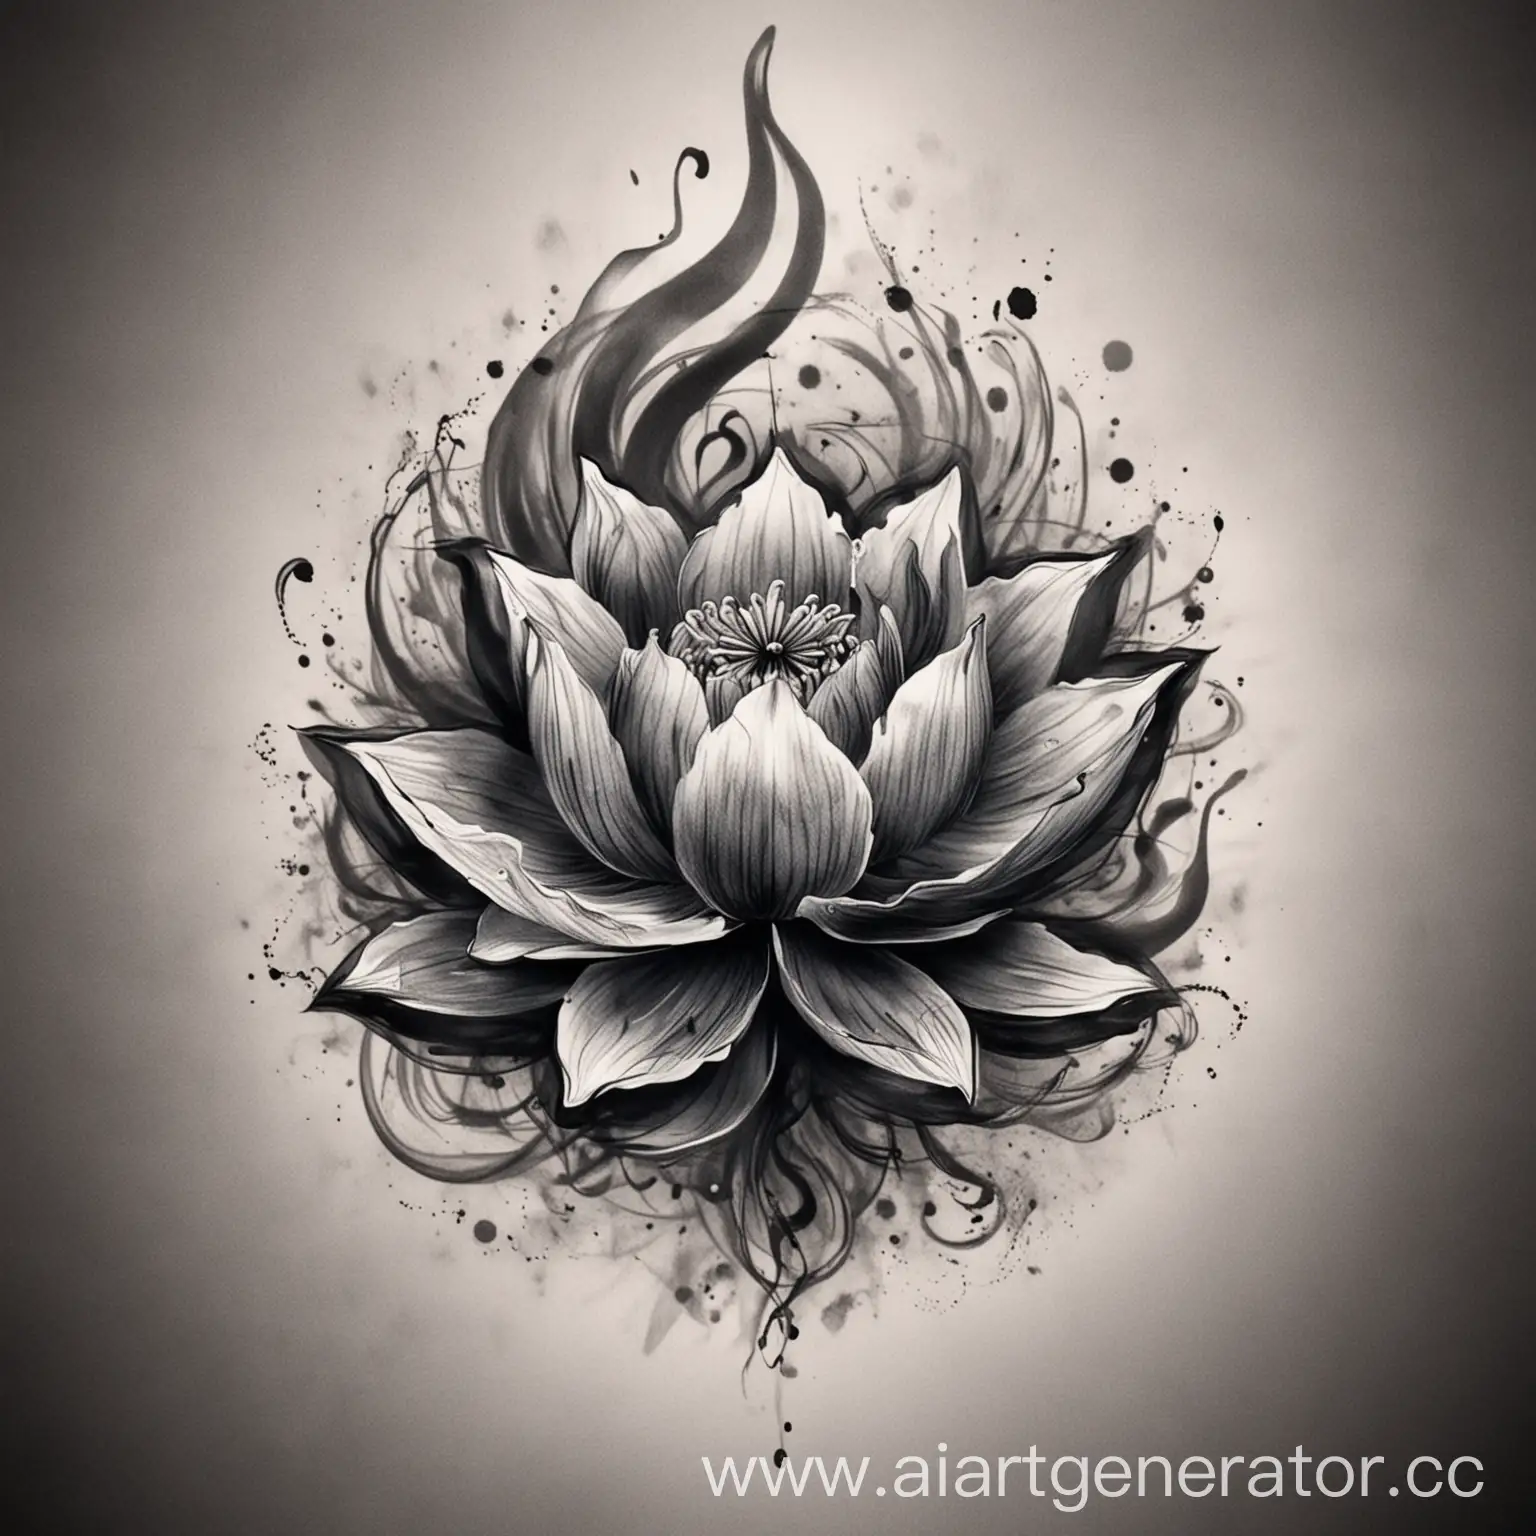 Lotus-Flower-Tattoo-Design-Emerging-from-Smoke